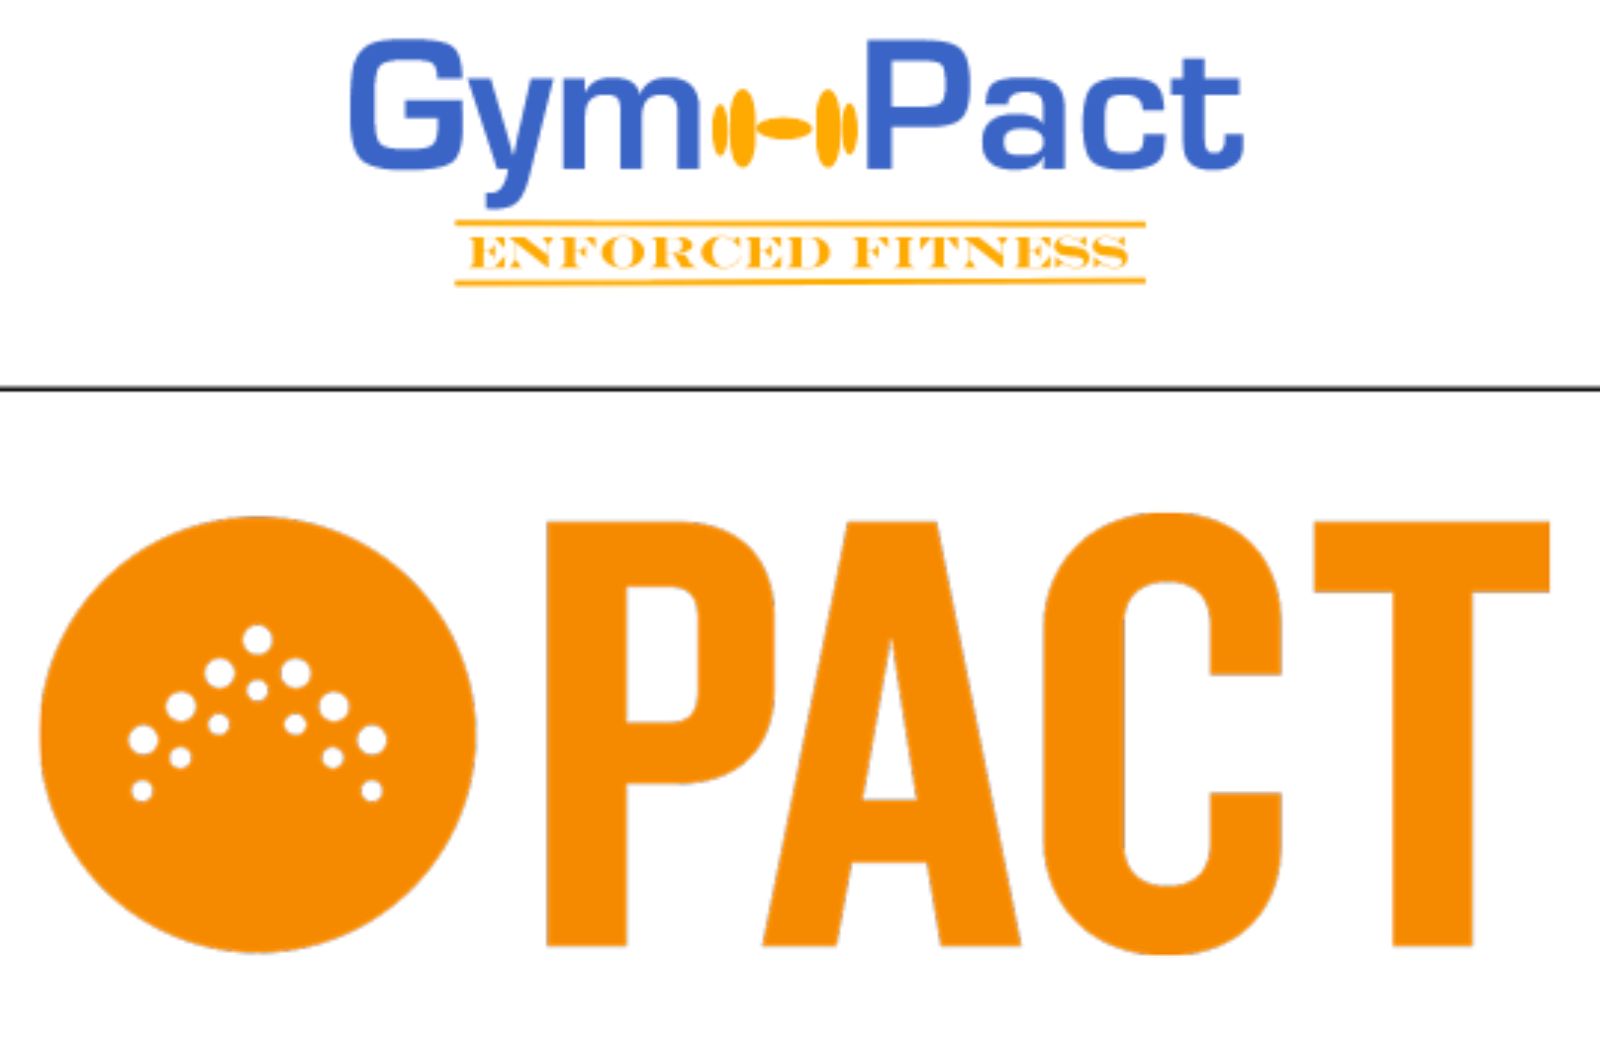 Gym Pact: come guadagnare tenendosi in forma!